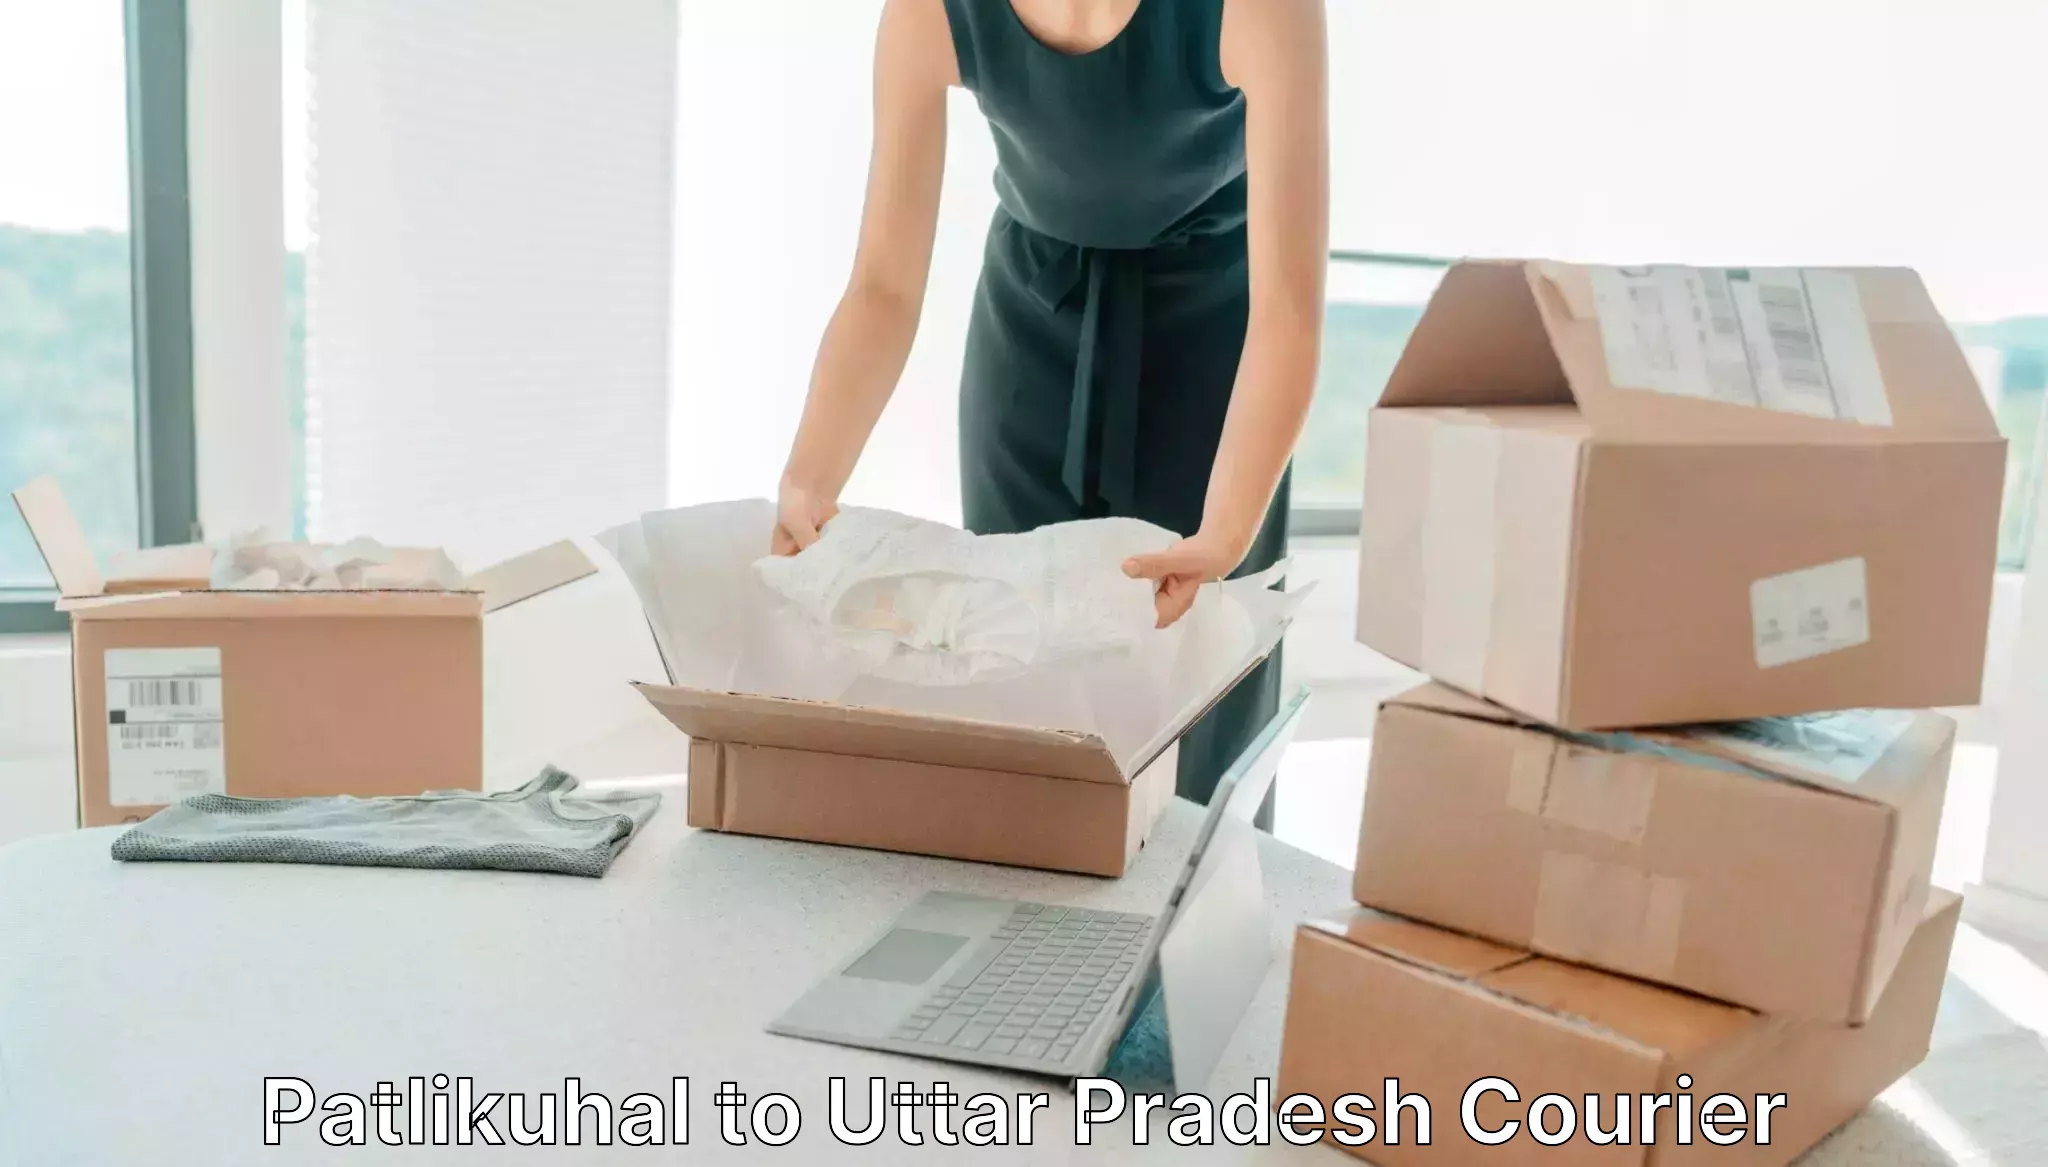 Bulk courier orders in Patlikuhal to Khaga